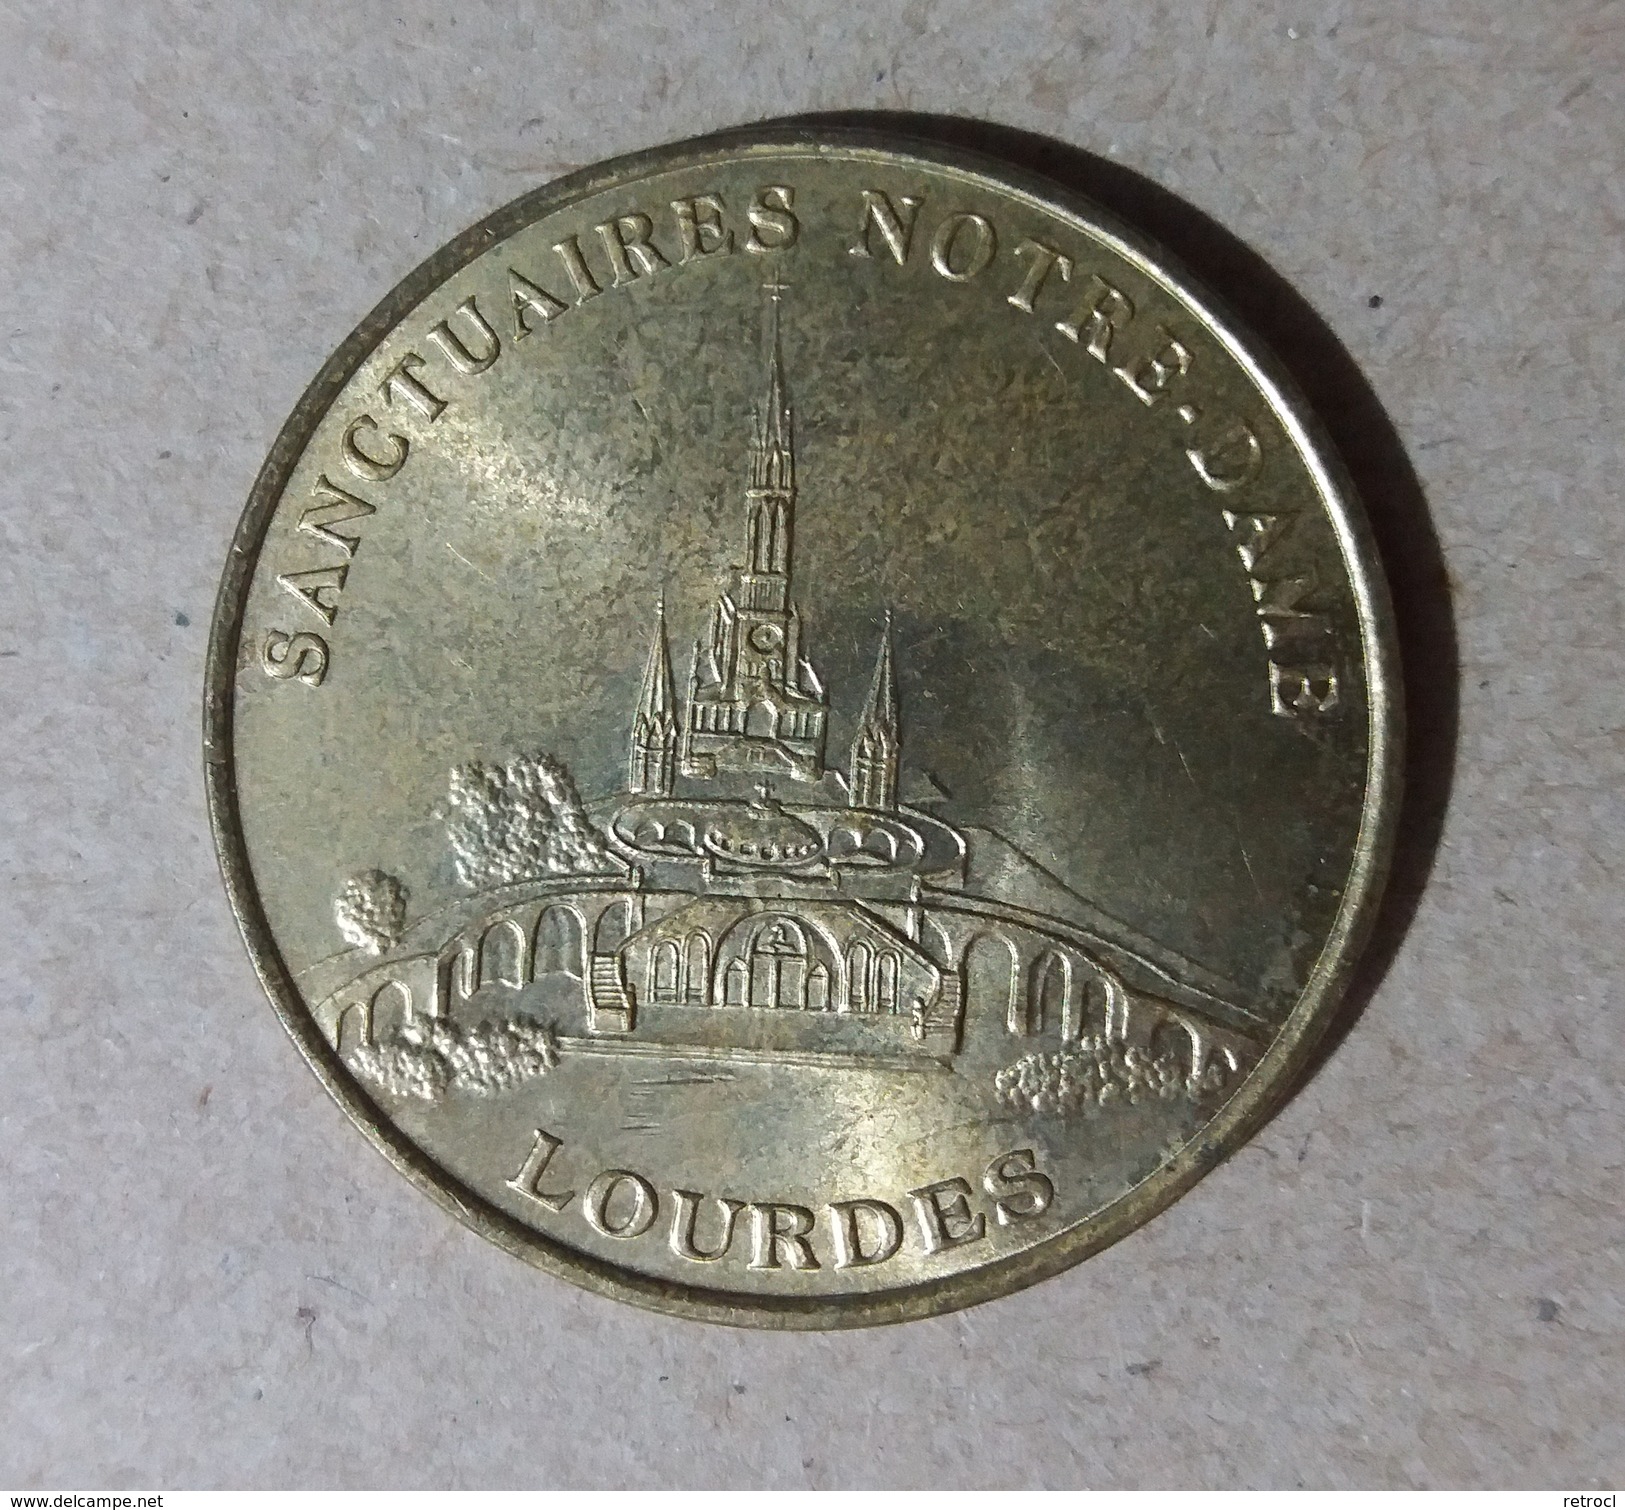 Sanctuaires De Notre-Dame Lourdes 1999 - Ohne Datum